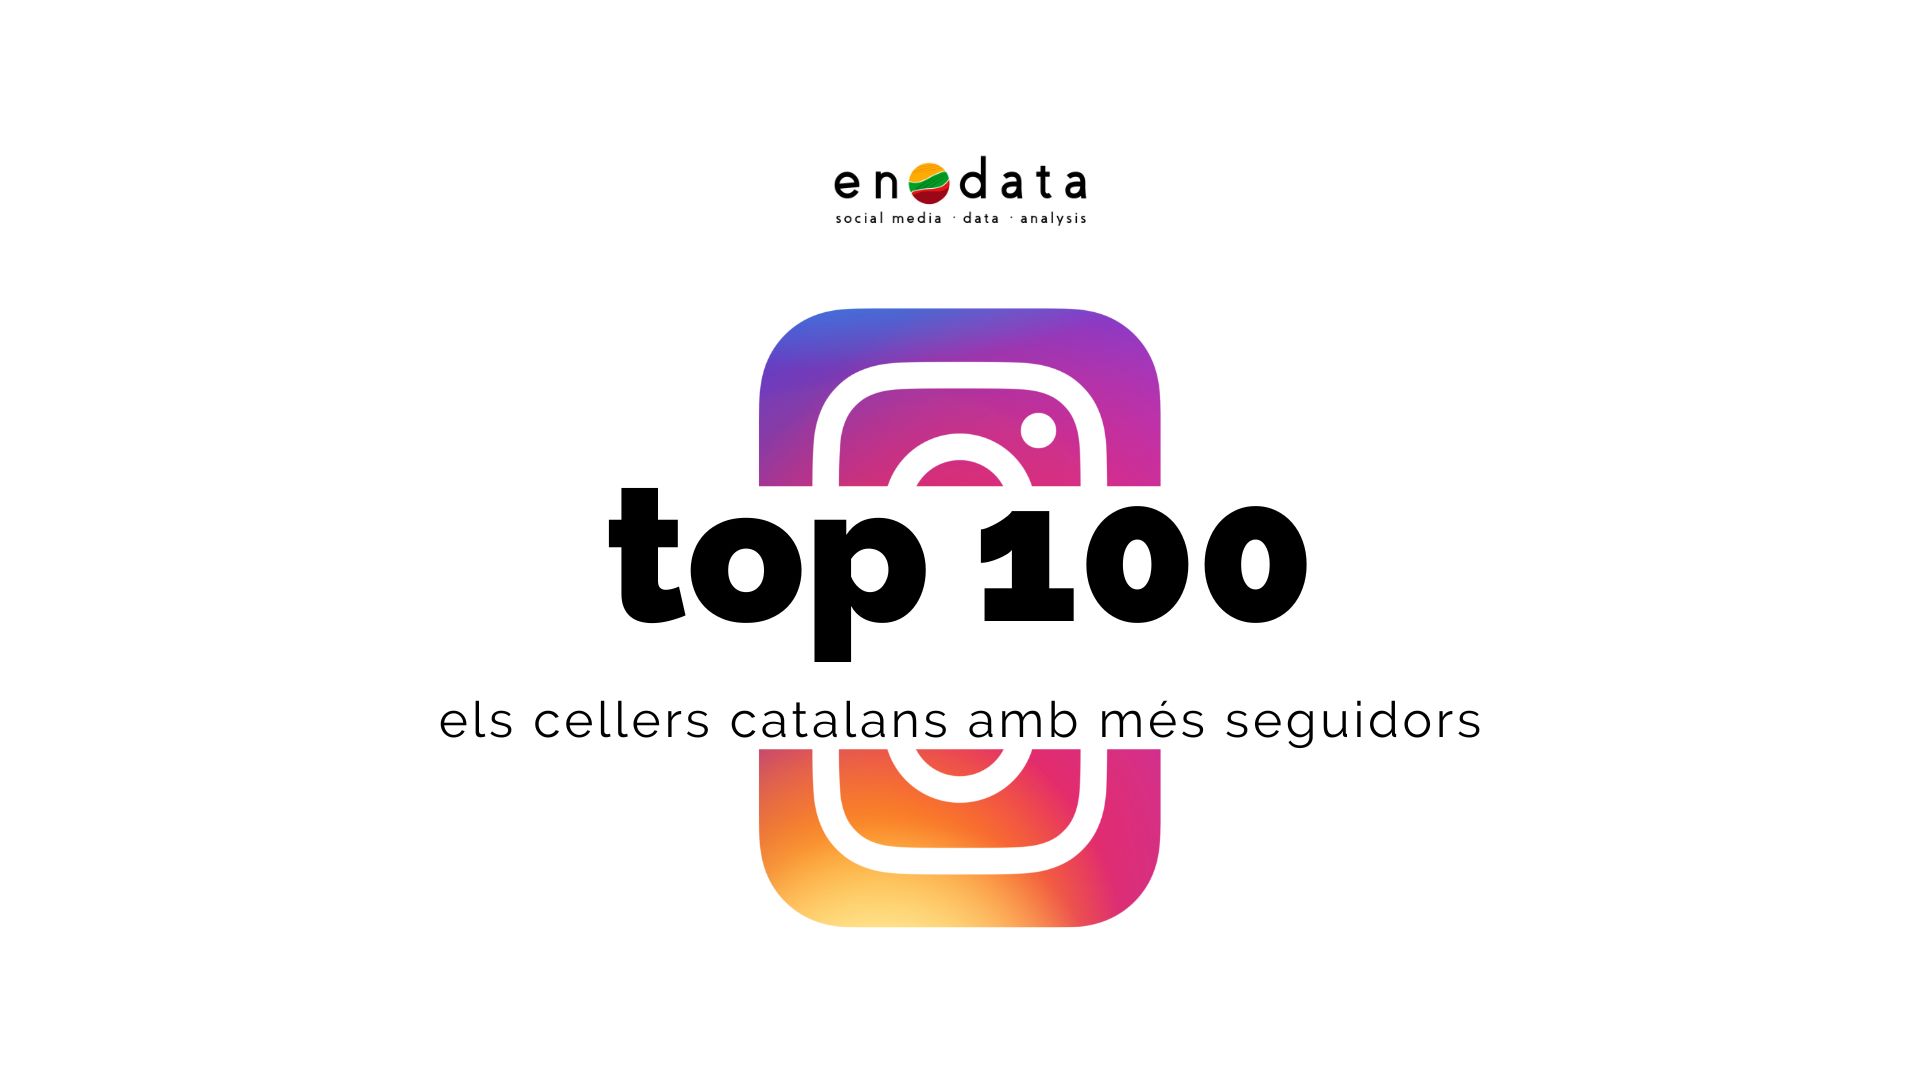 enodata-top-100-cellers